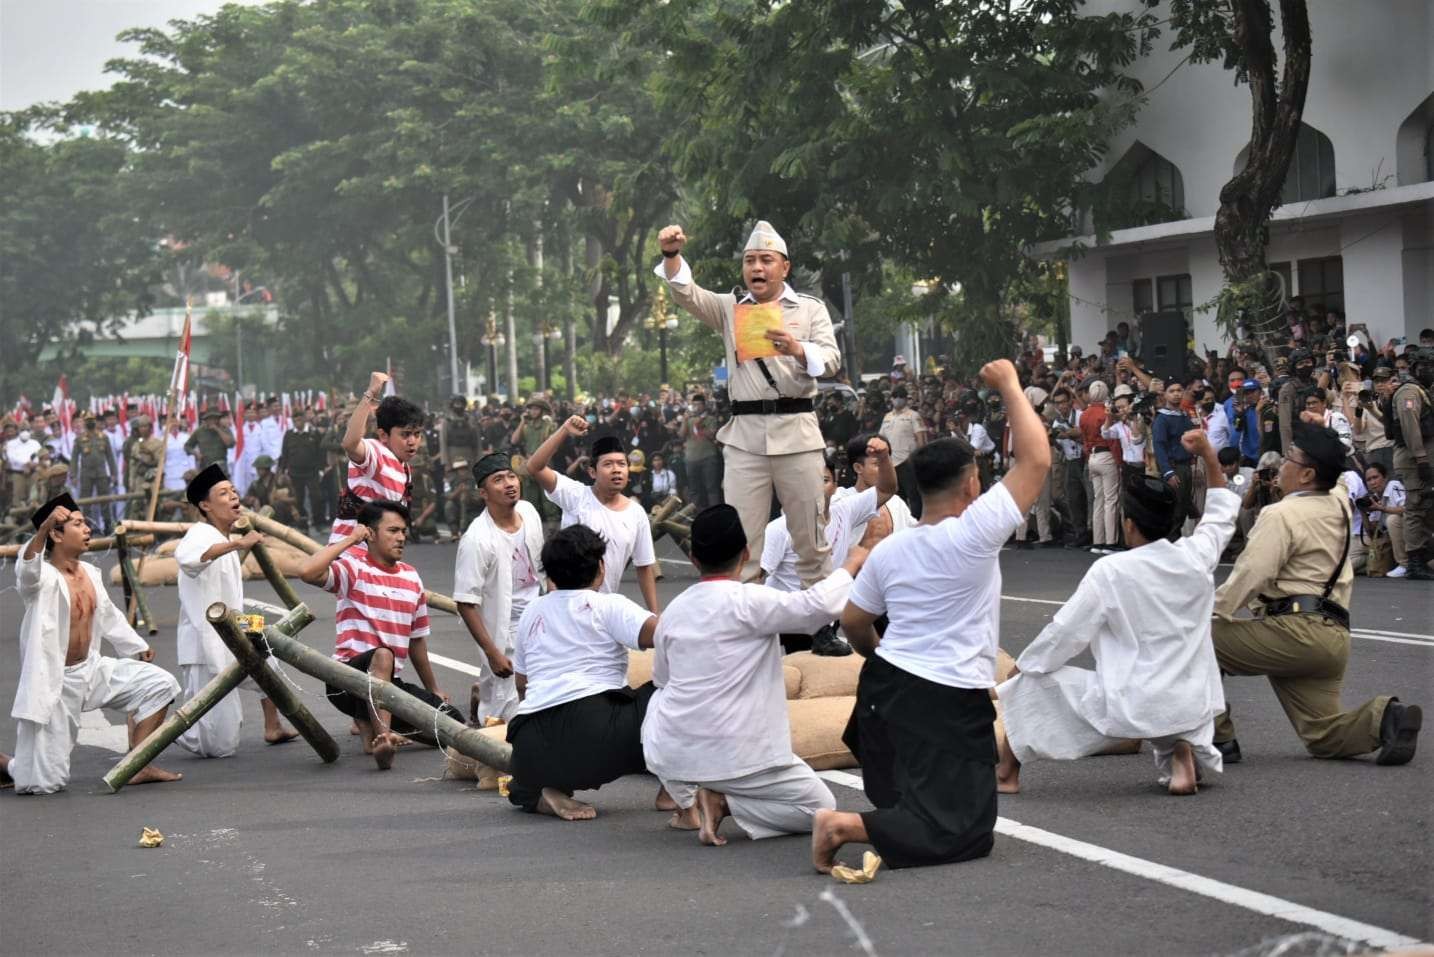 Parade Juang Surabaya yang akan jadi event nasional. (Foto: Humas Pemkot Surabaya)